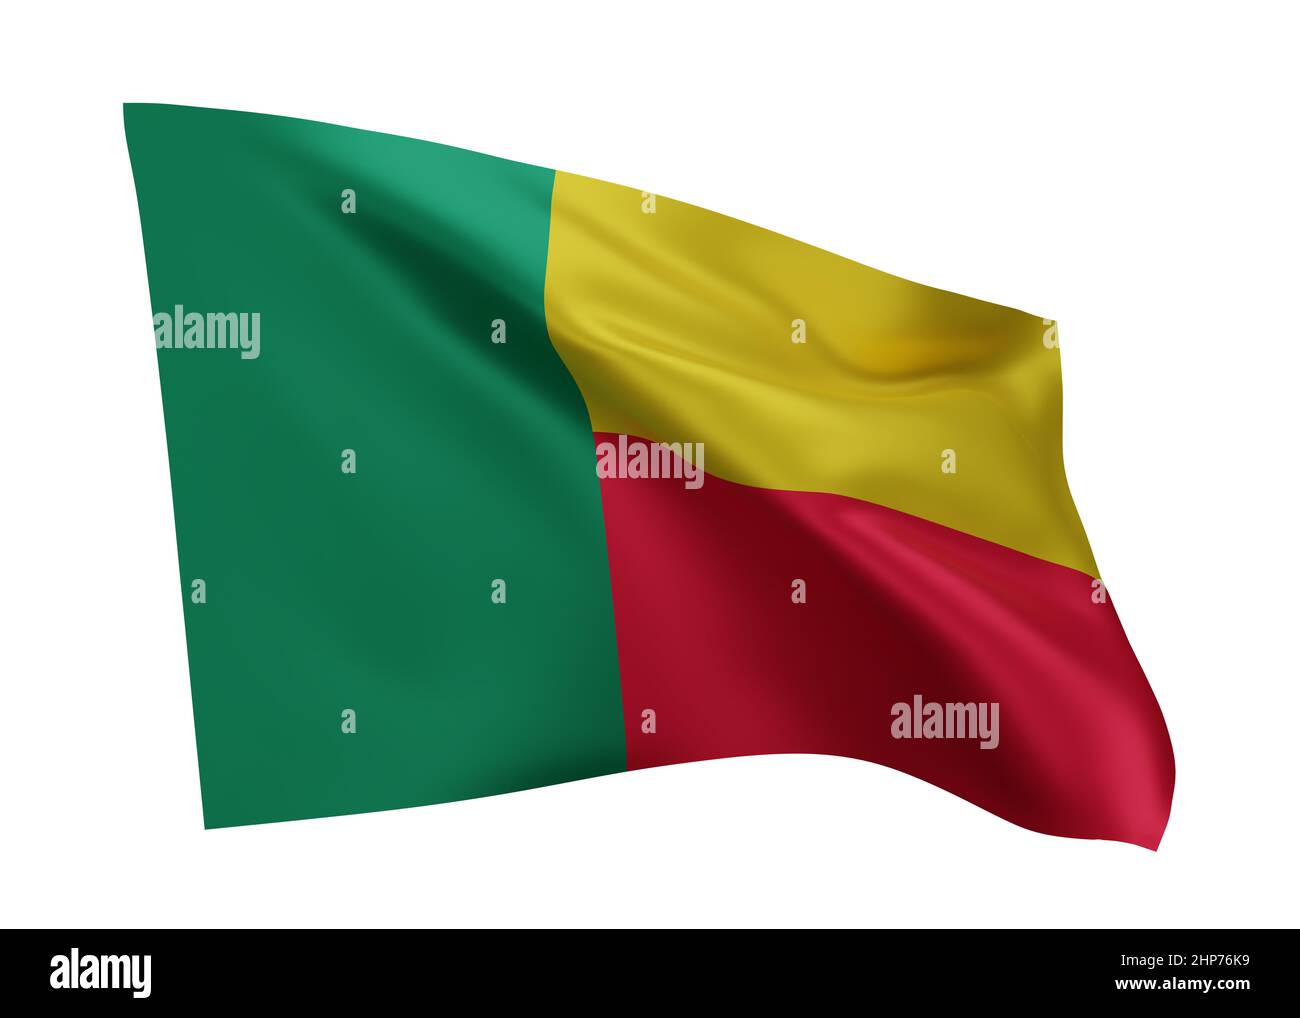 3d illustration flag of Benin. Beninese high resolution flag isolated against white background. 3d rendering Stock Photo